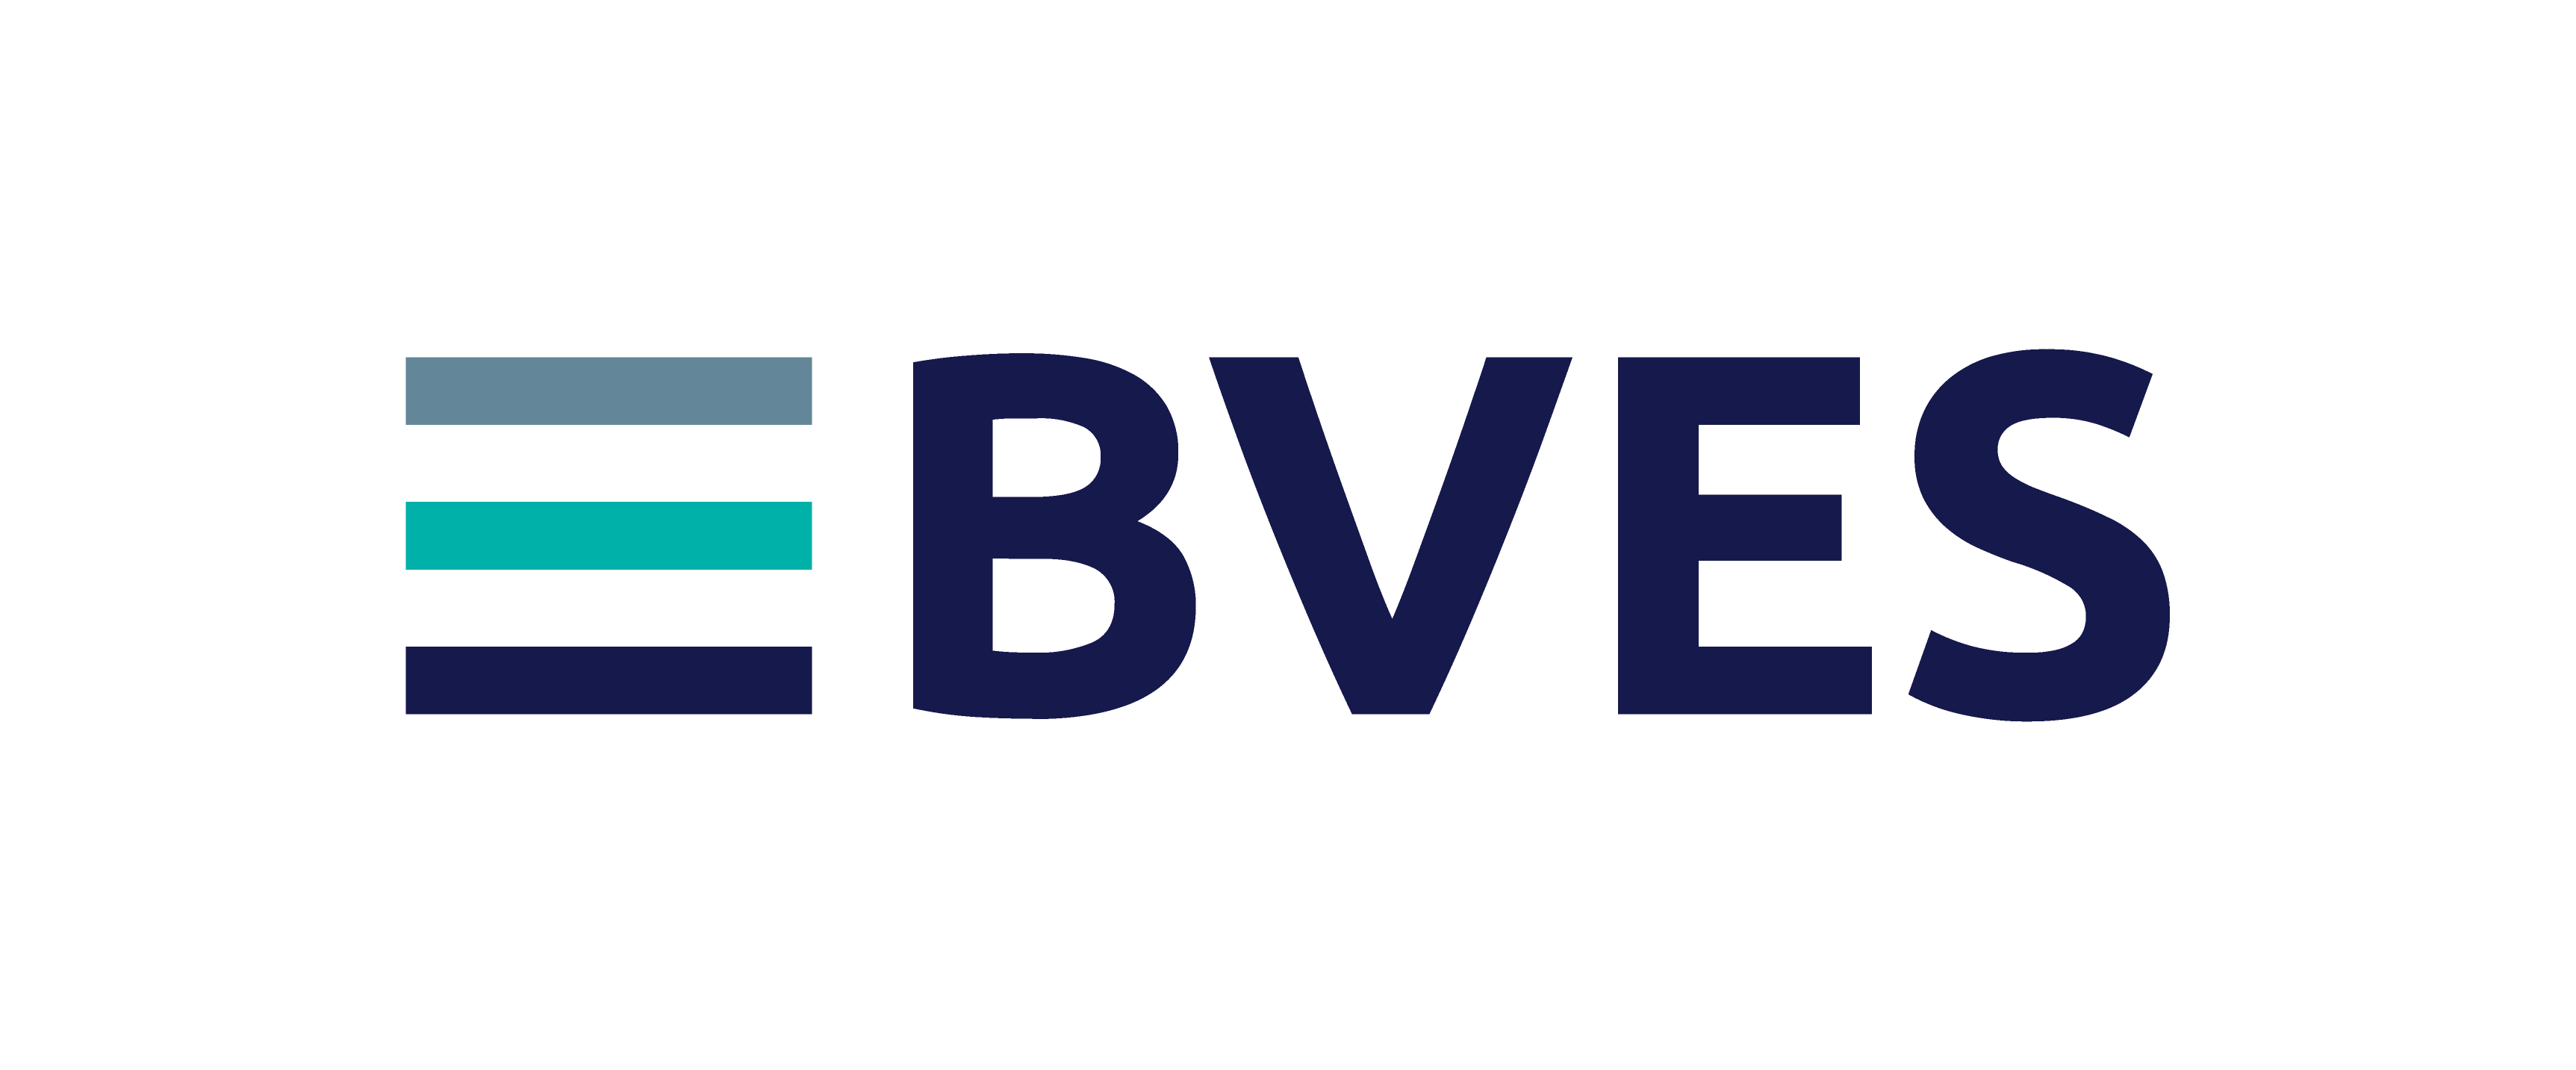 Logo BVES